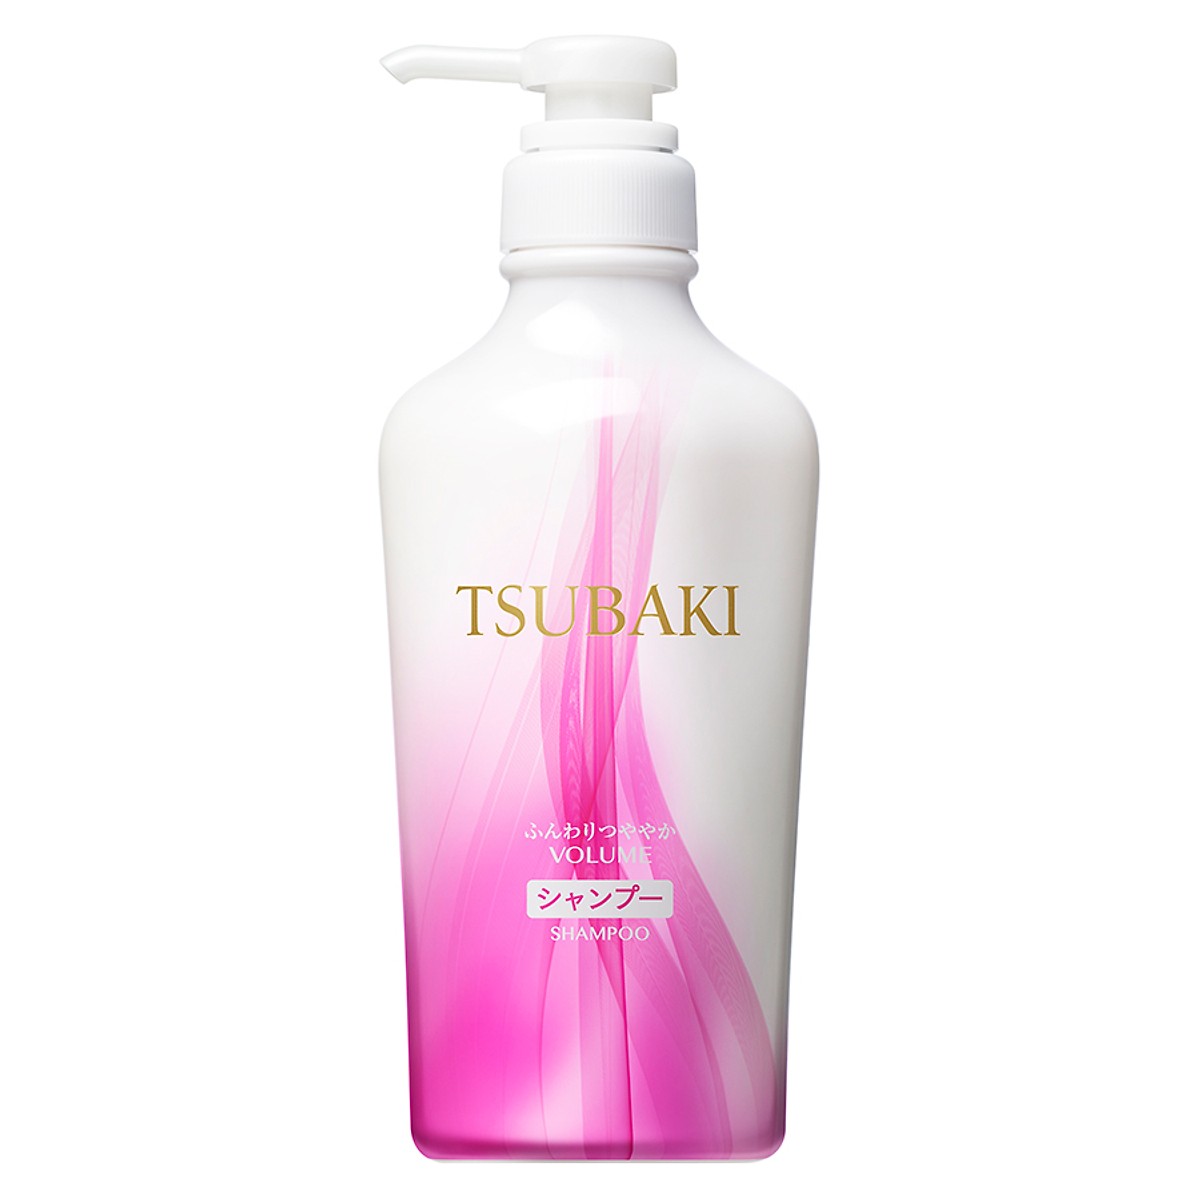 Купить шампунь shampoo. Tsubaki Volume шампунь. Шампунь Shiseido Tsubaki. Tsubaki шампунь Volume Touch. Корейский шампунь для волос Tsubaki.